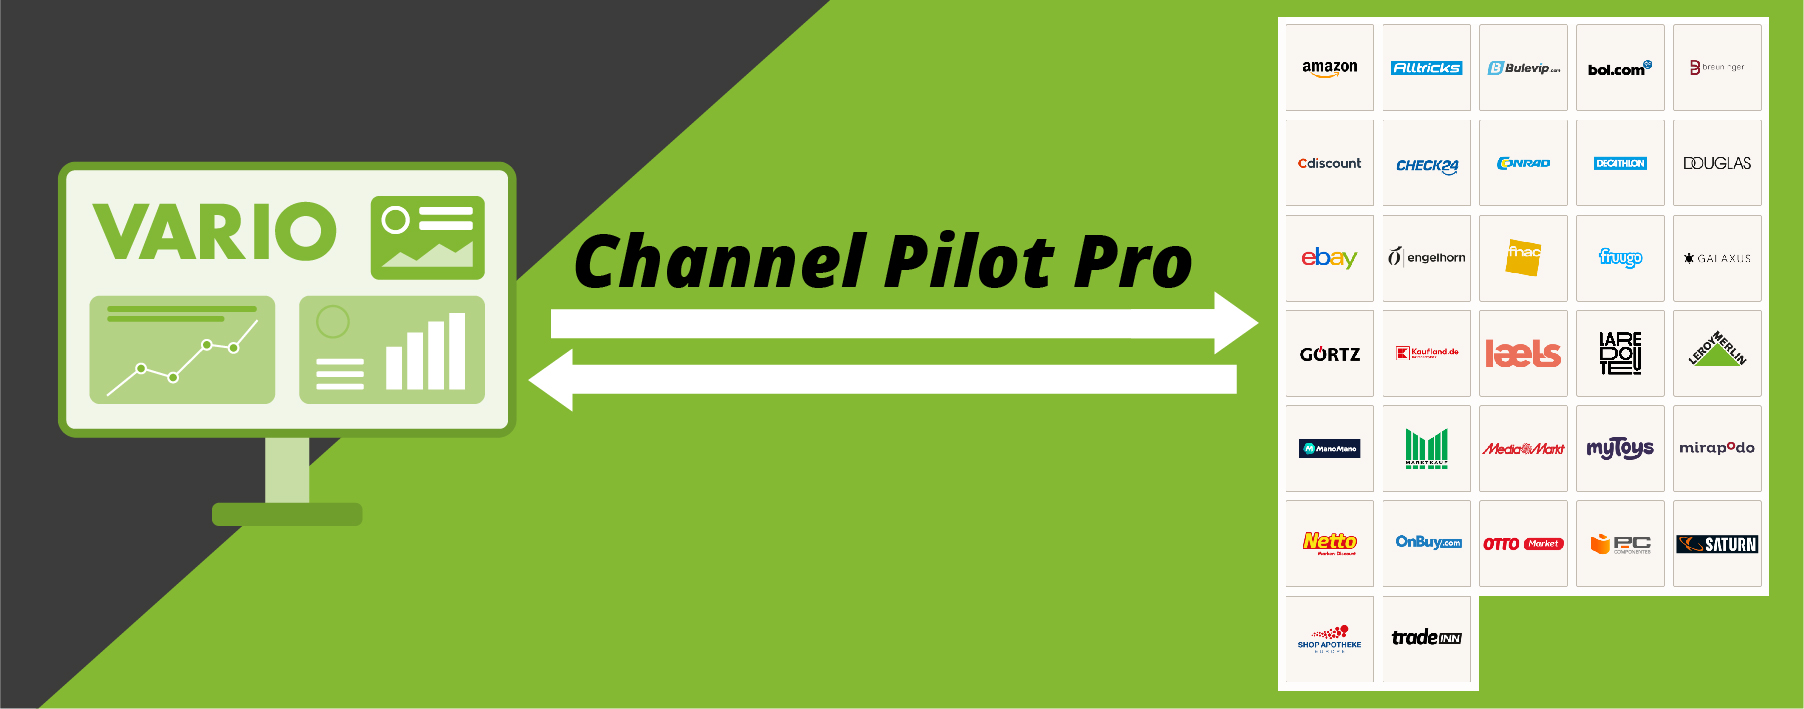 Schnittstellenübersicht Channel Pilot Pro